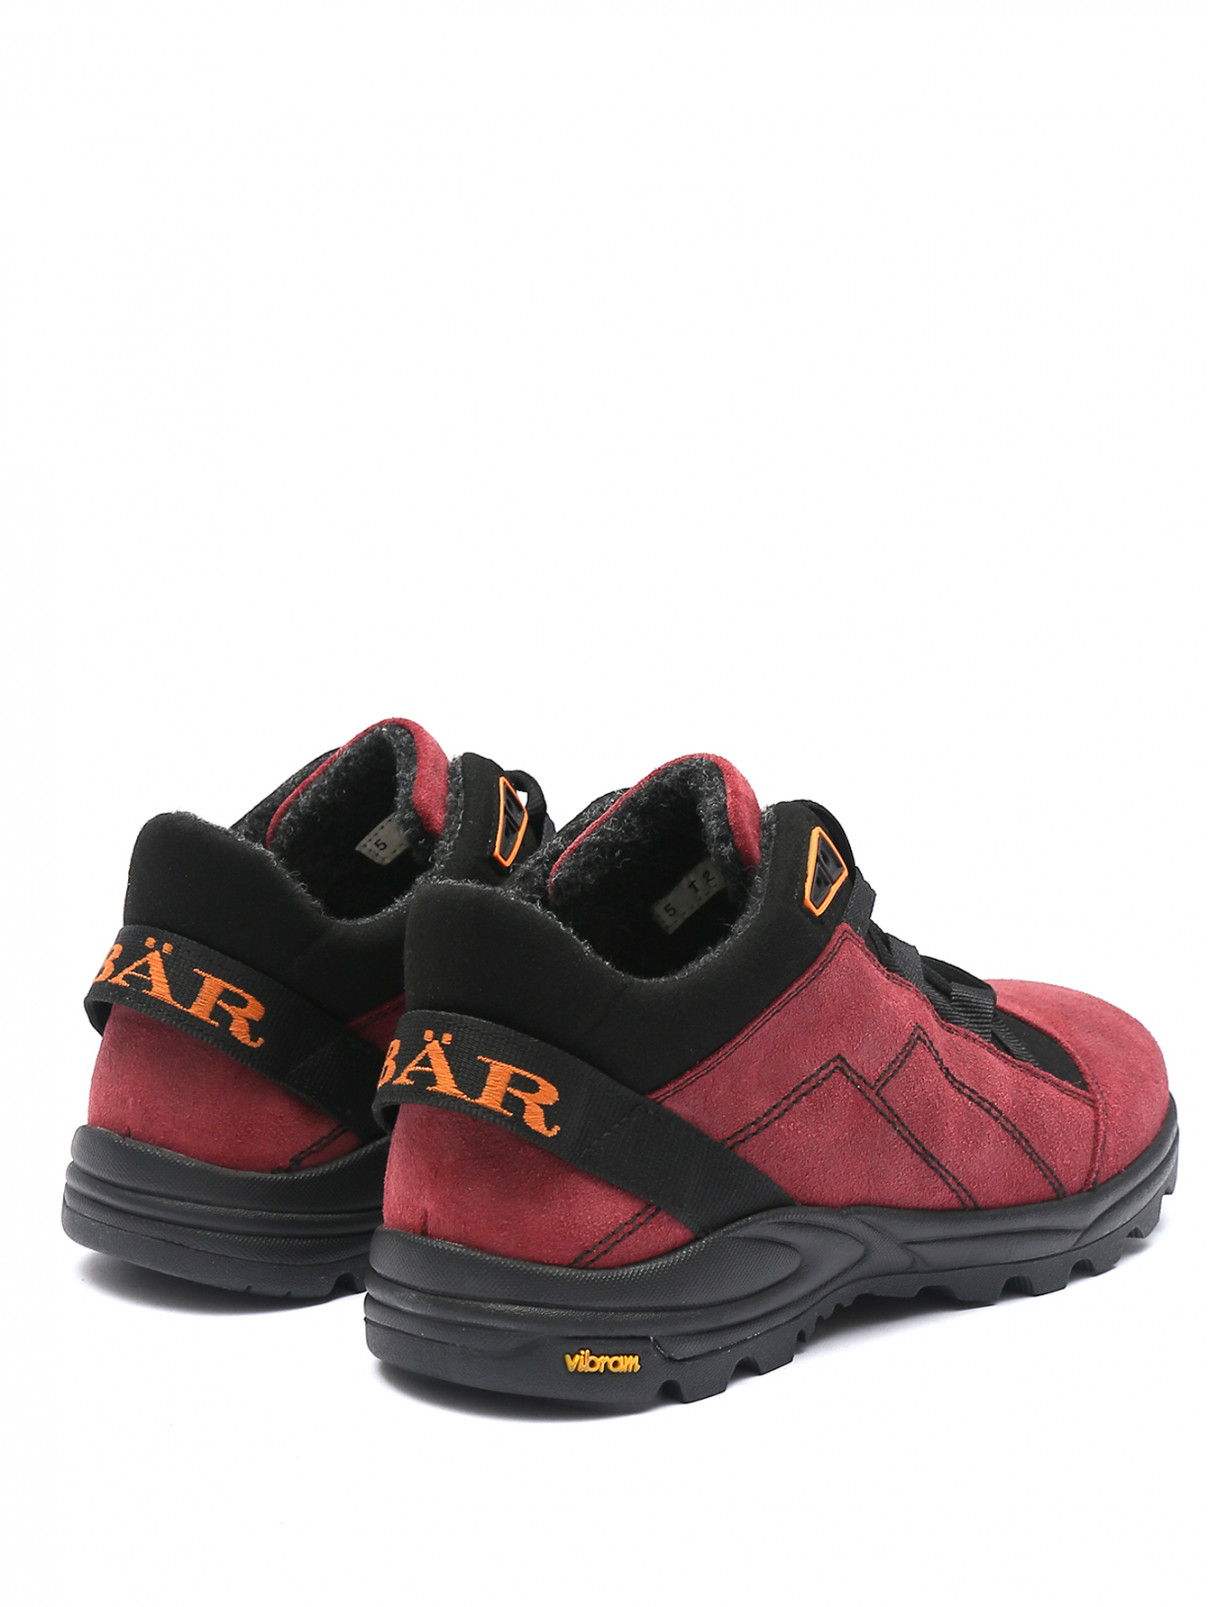 Комбинированные ботинки на шнурках BAER  –  Обтравка2  – Цвет:  Фиолетовый